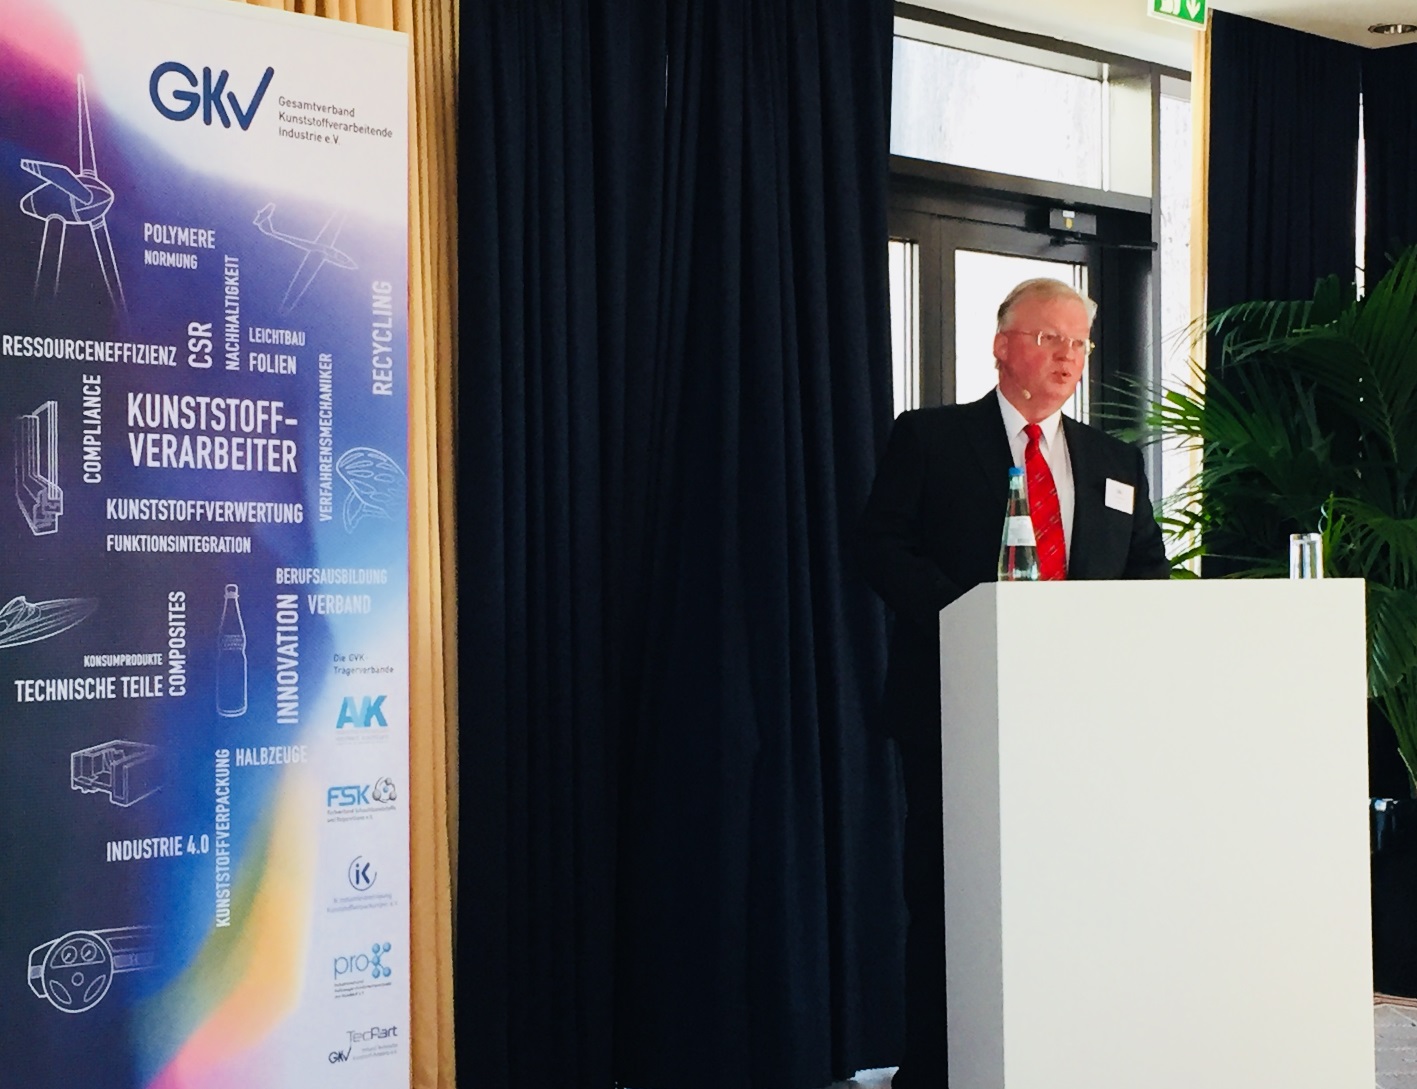 GKV-Präsident Dirk E. O. Westerheide zog eine positive Bilanz für die Kunststoffverarbeitung in Deutschland